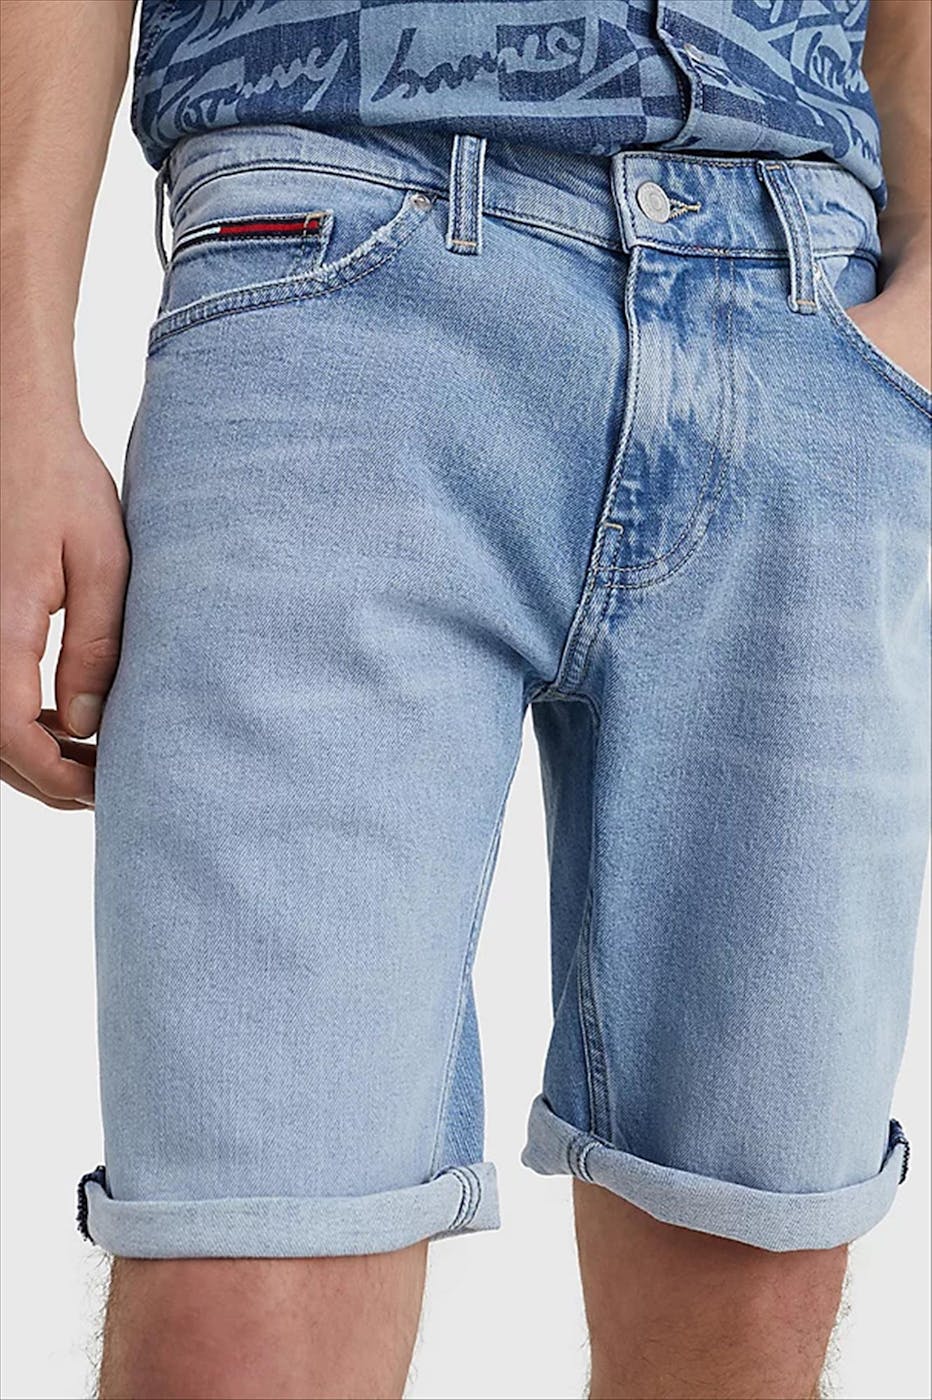 Tommy Jeans - Lichtblauwe Scanton Slim jeansshort